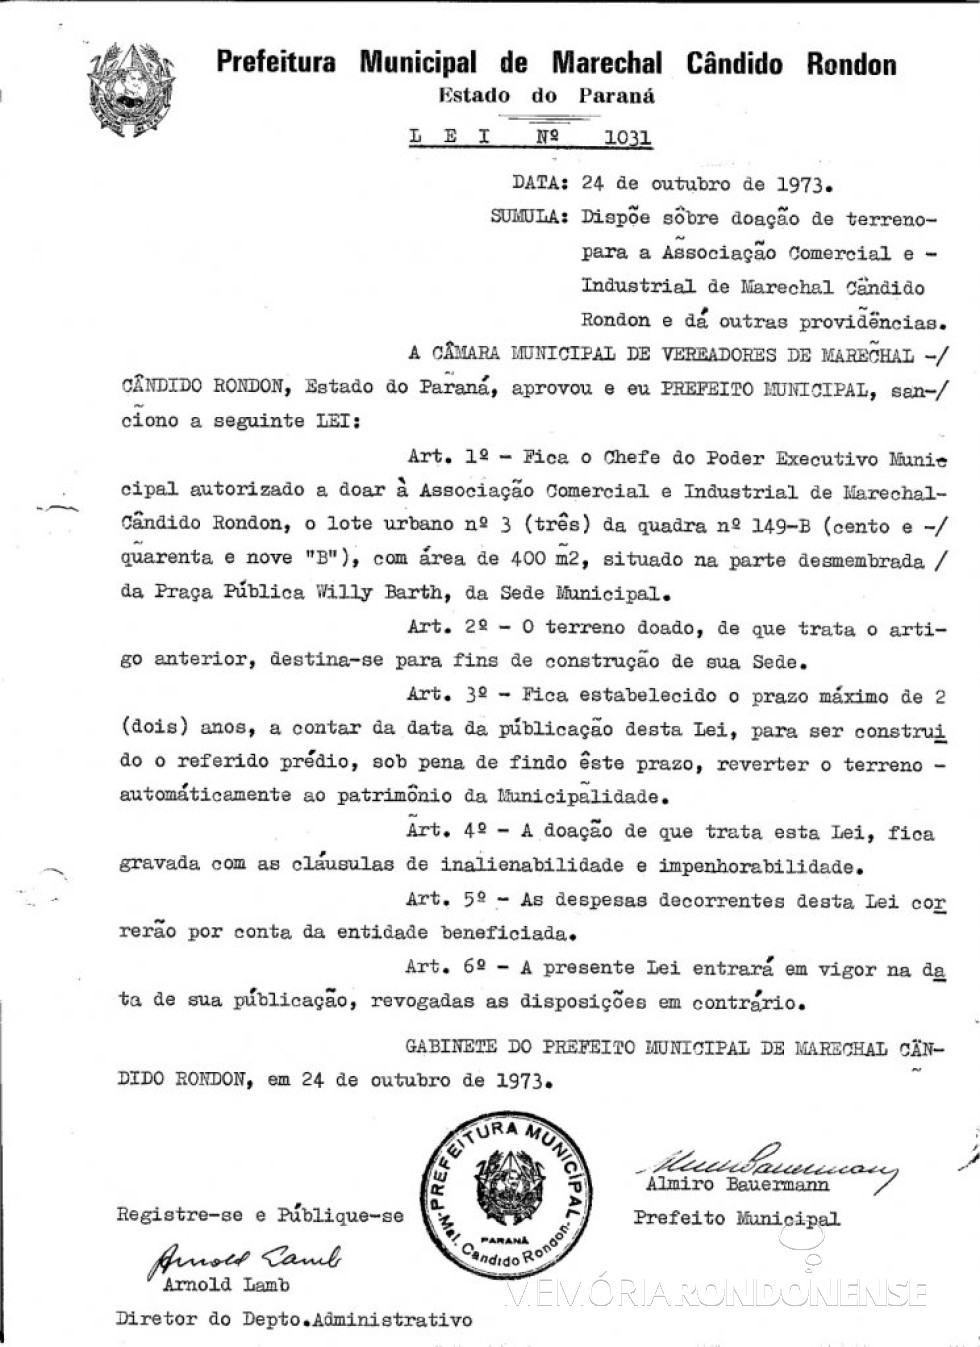 || Lei nº 1031 que doou área para a Associação Comercial e Industrial de Marechal Cândido Rondon (ACIMACAR), em outubro de 1973.
Imagem: Acervo Prefeitura Municipal de Marechal Cândido Rondon - FOTO 9 - 